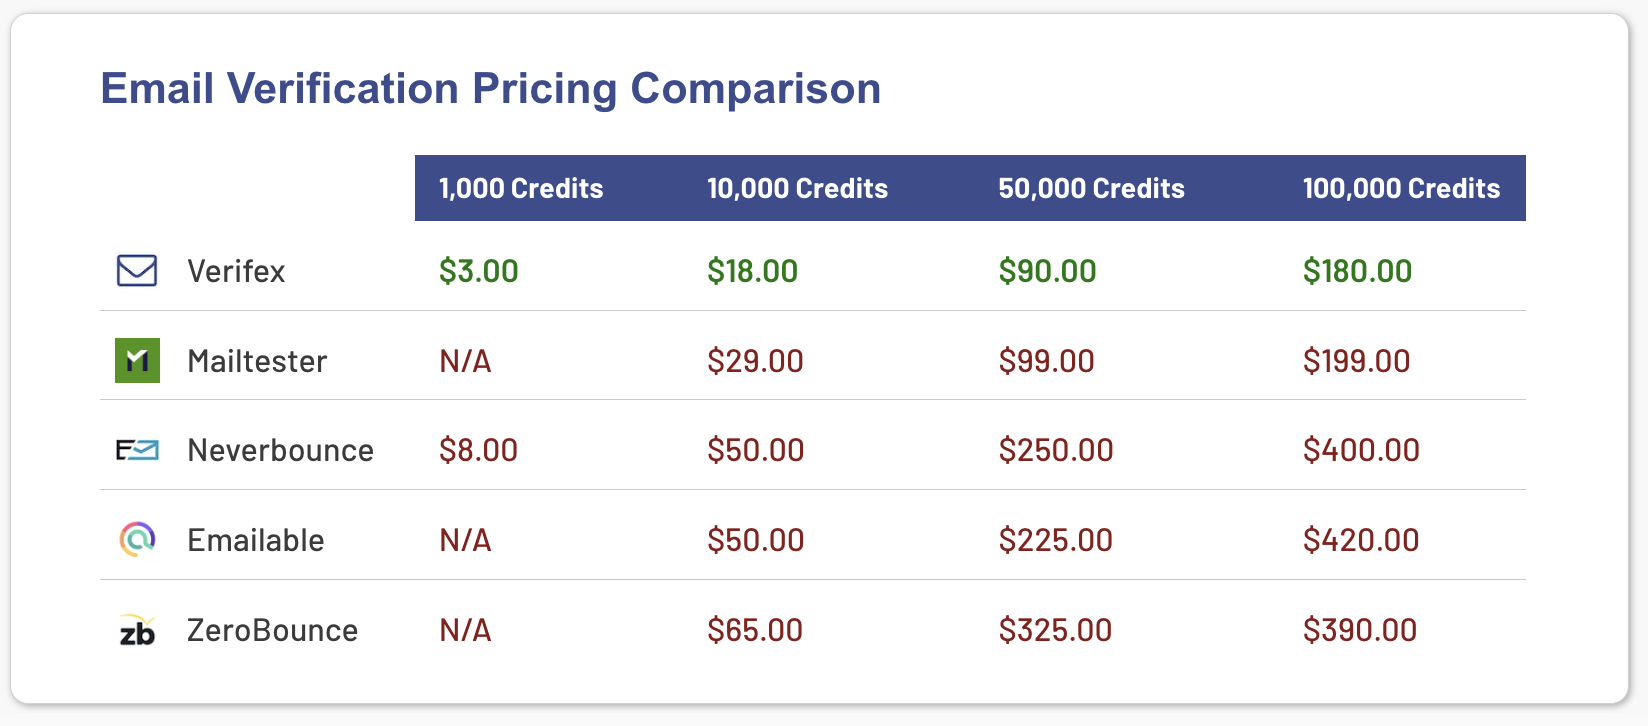 Pricing Comparison